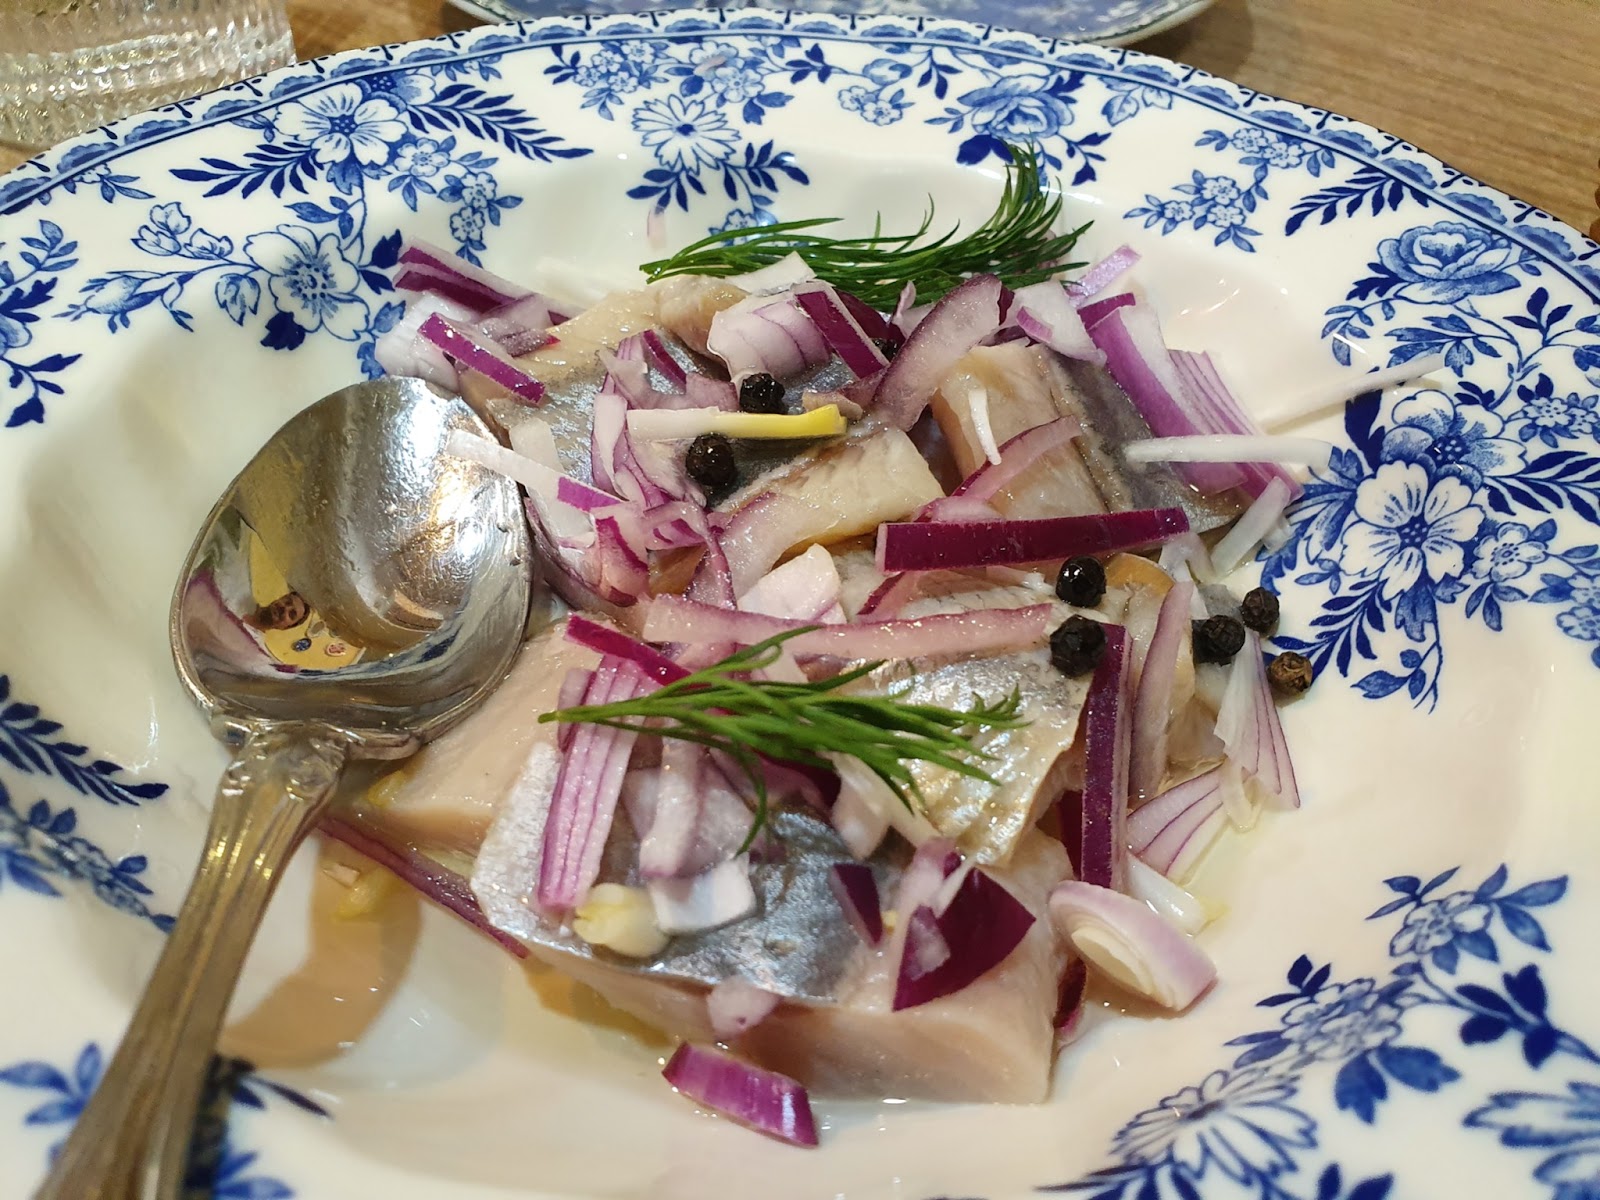 Dacha restaurant's baltic herring